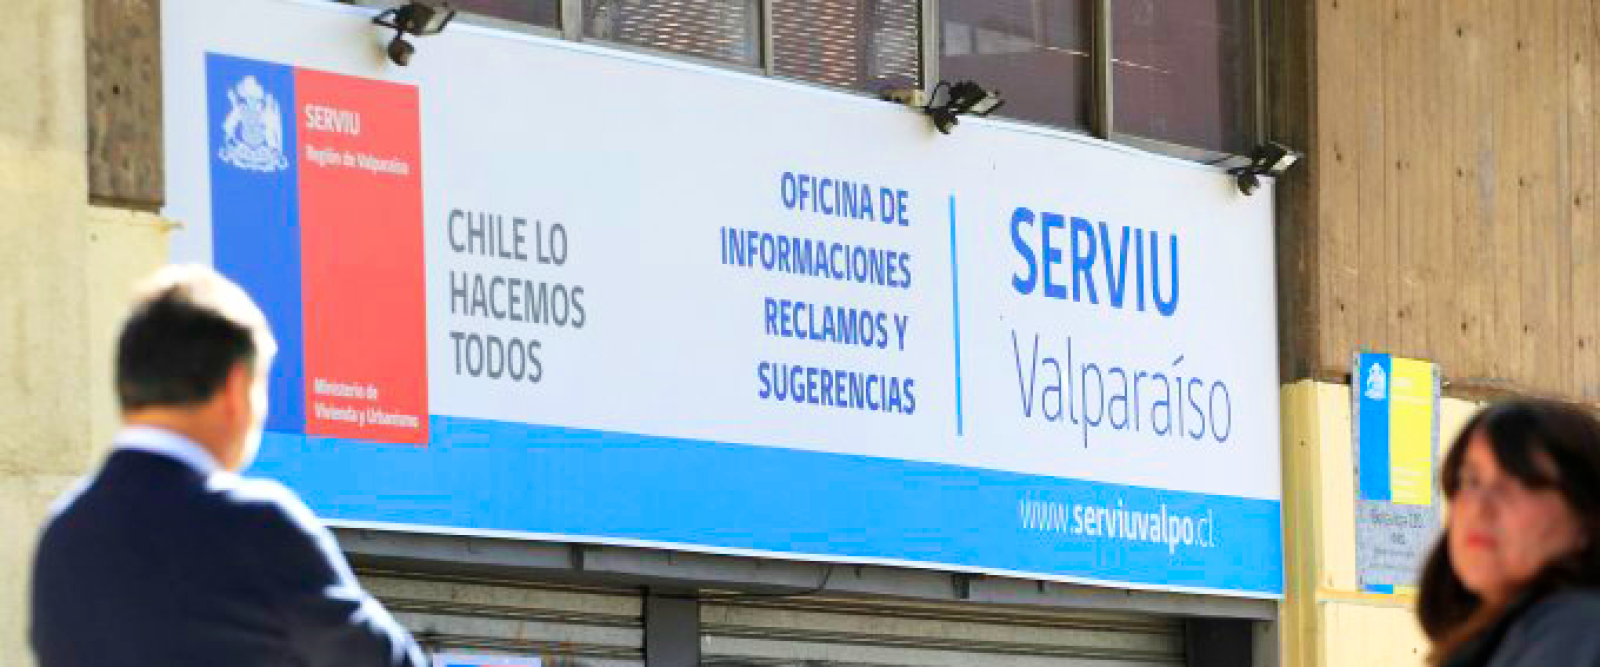 Caso Fundaciones: PDI decomisa documentos en el Serviu de Valparaíso